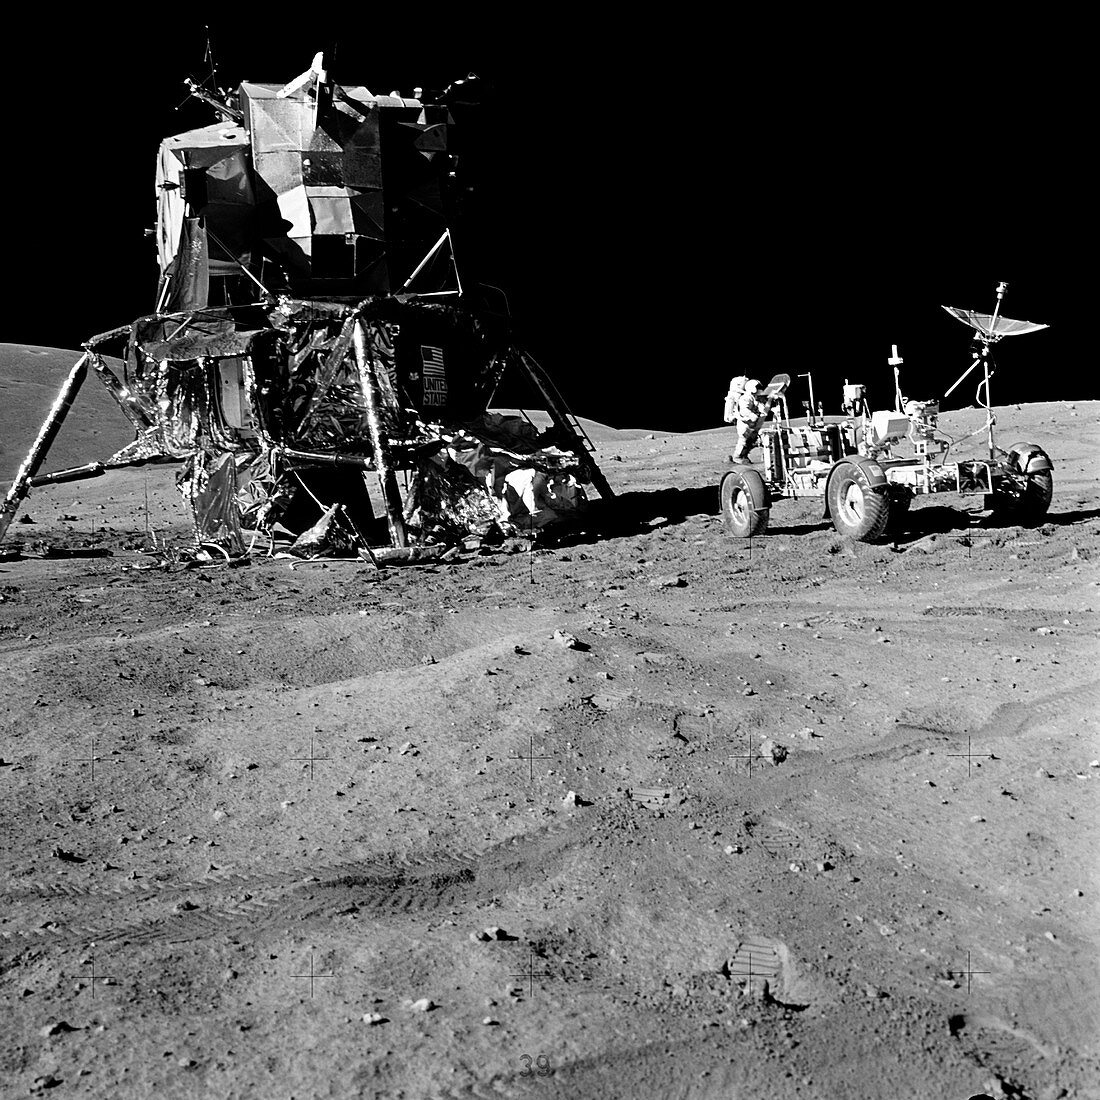 Apollo 16 lunar module on the moon